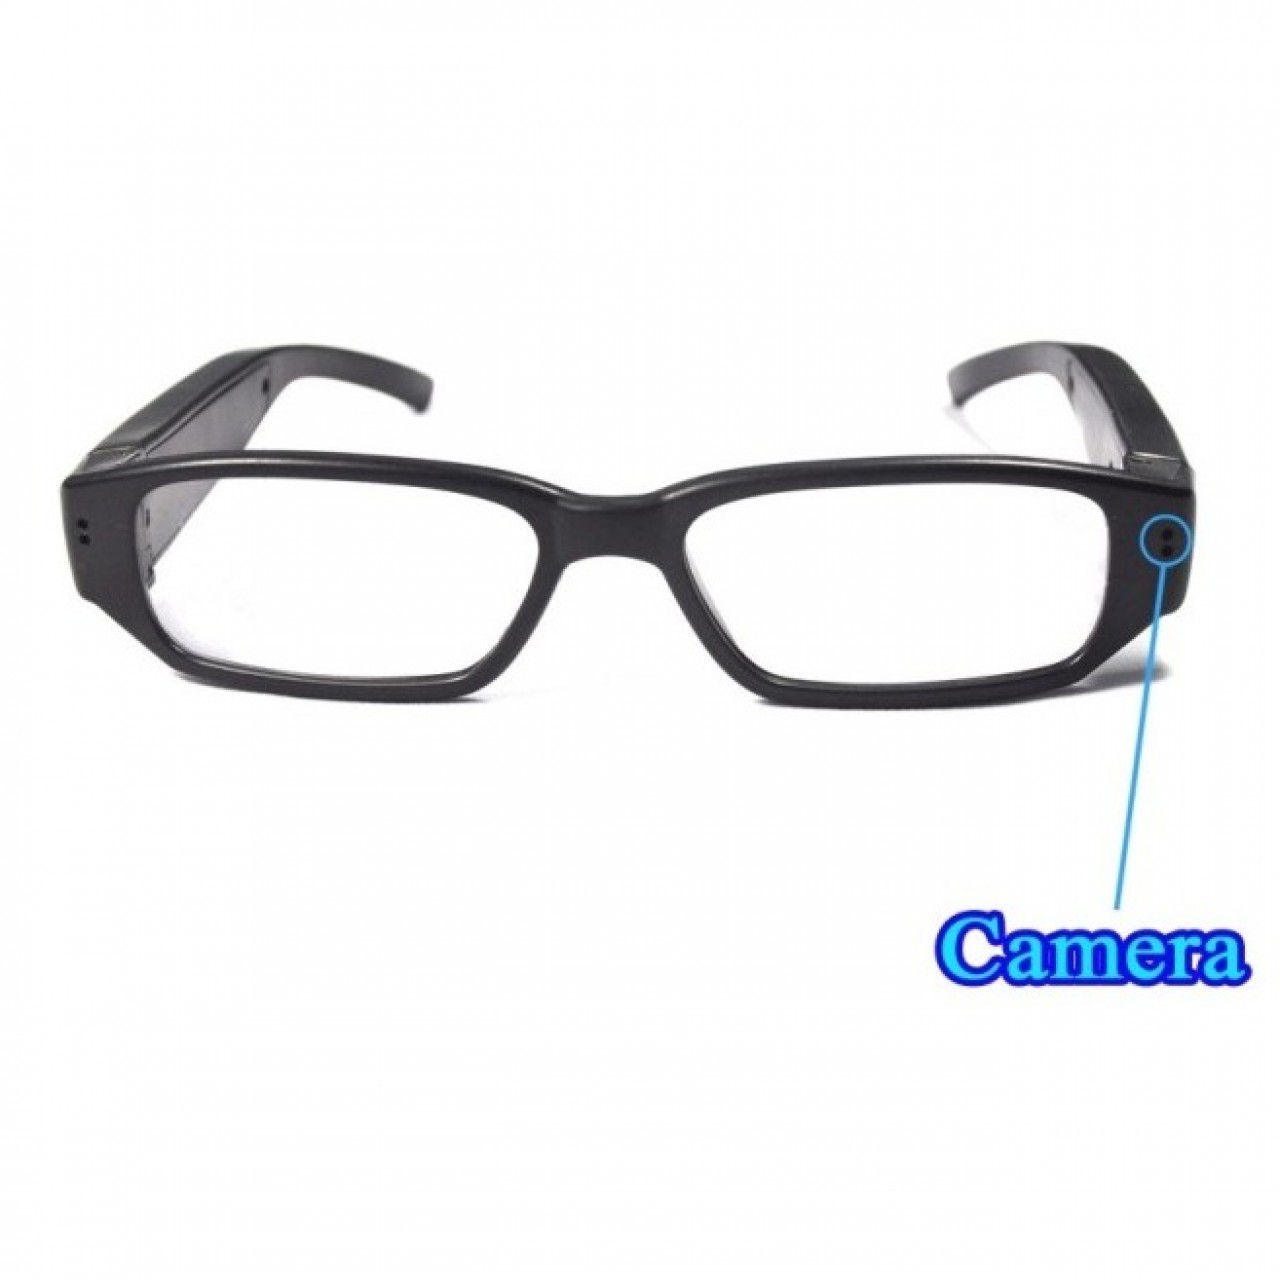 Glasses camera recorder 720p